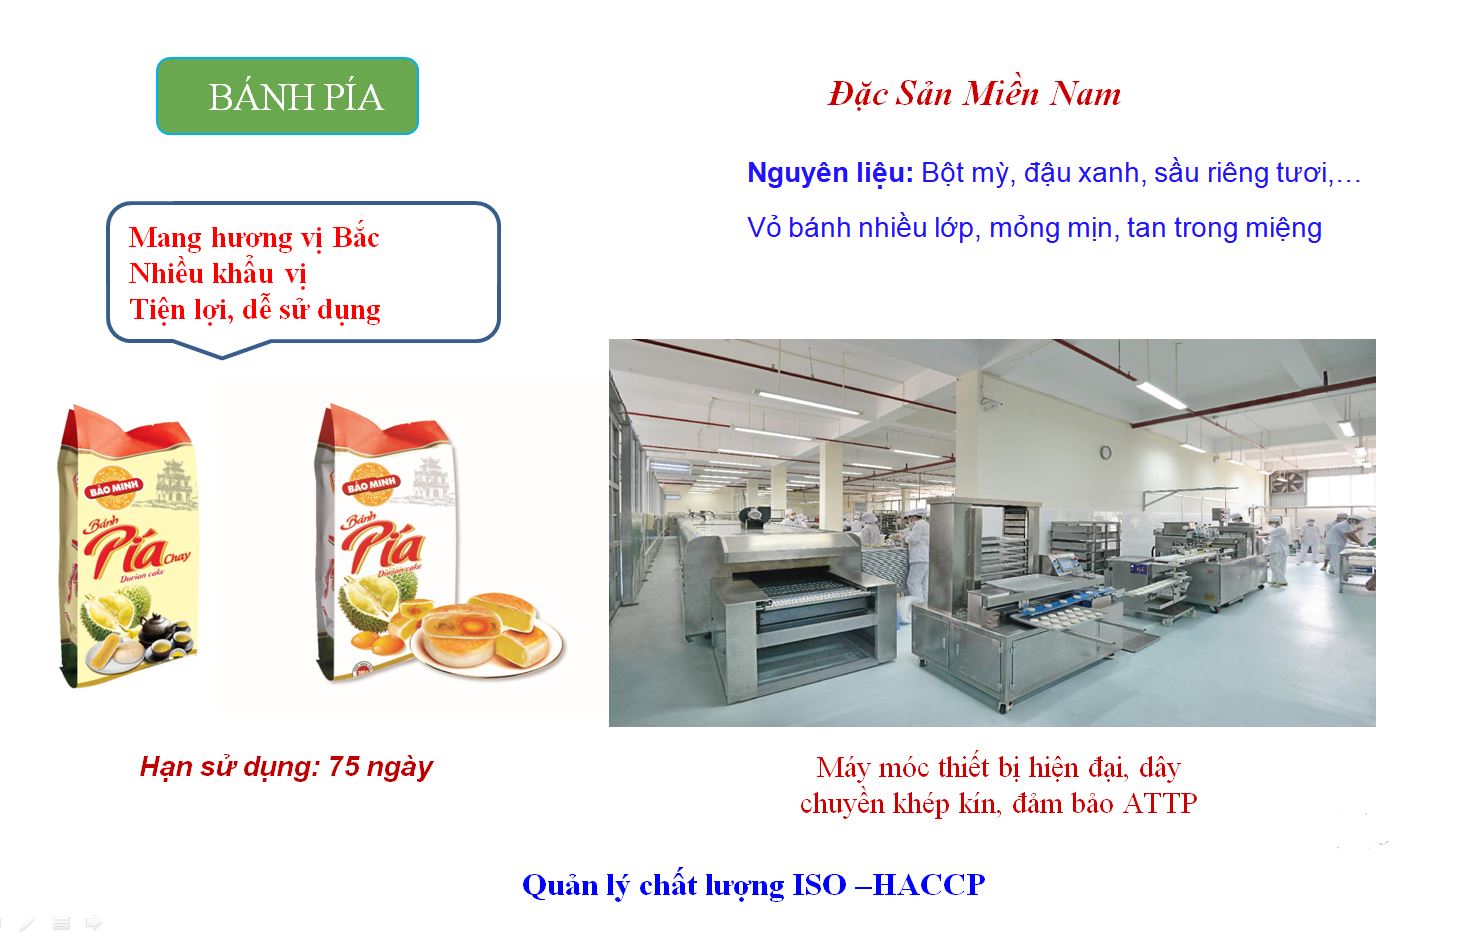 Bánh Pía Bảo Minh - Địa chỉ mua bánh Pía ở Hà Nội | Đặc sản Bảo Minh